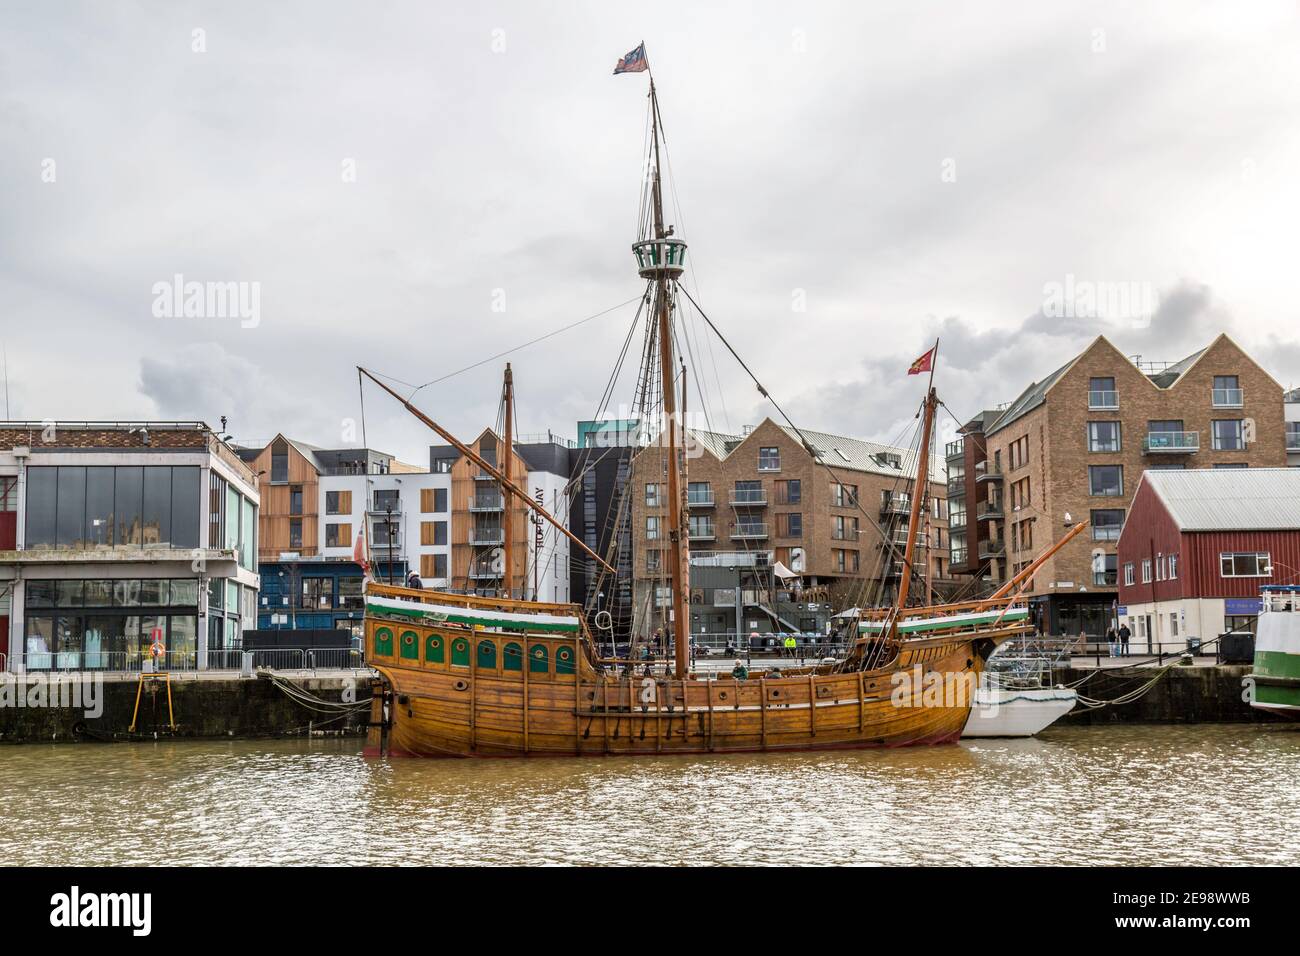 Die 'Matthew', ein Replik quadratisch getakeltes Segelschiff, das auf dem Fluss Avon in Bristol festgemacht ist. Erbaut 1994. Stockfoto